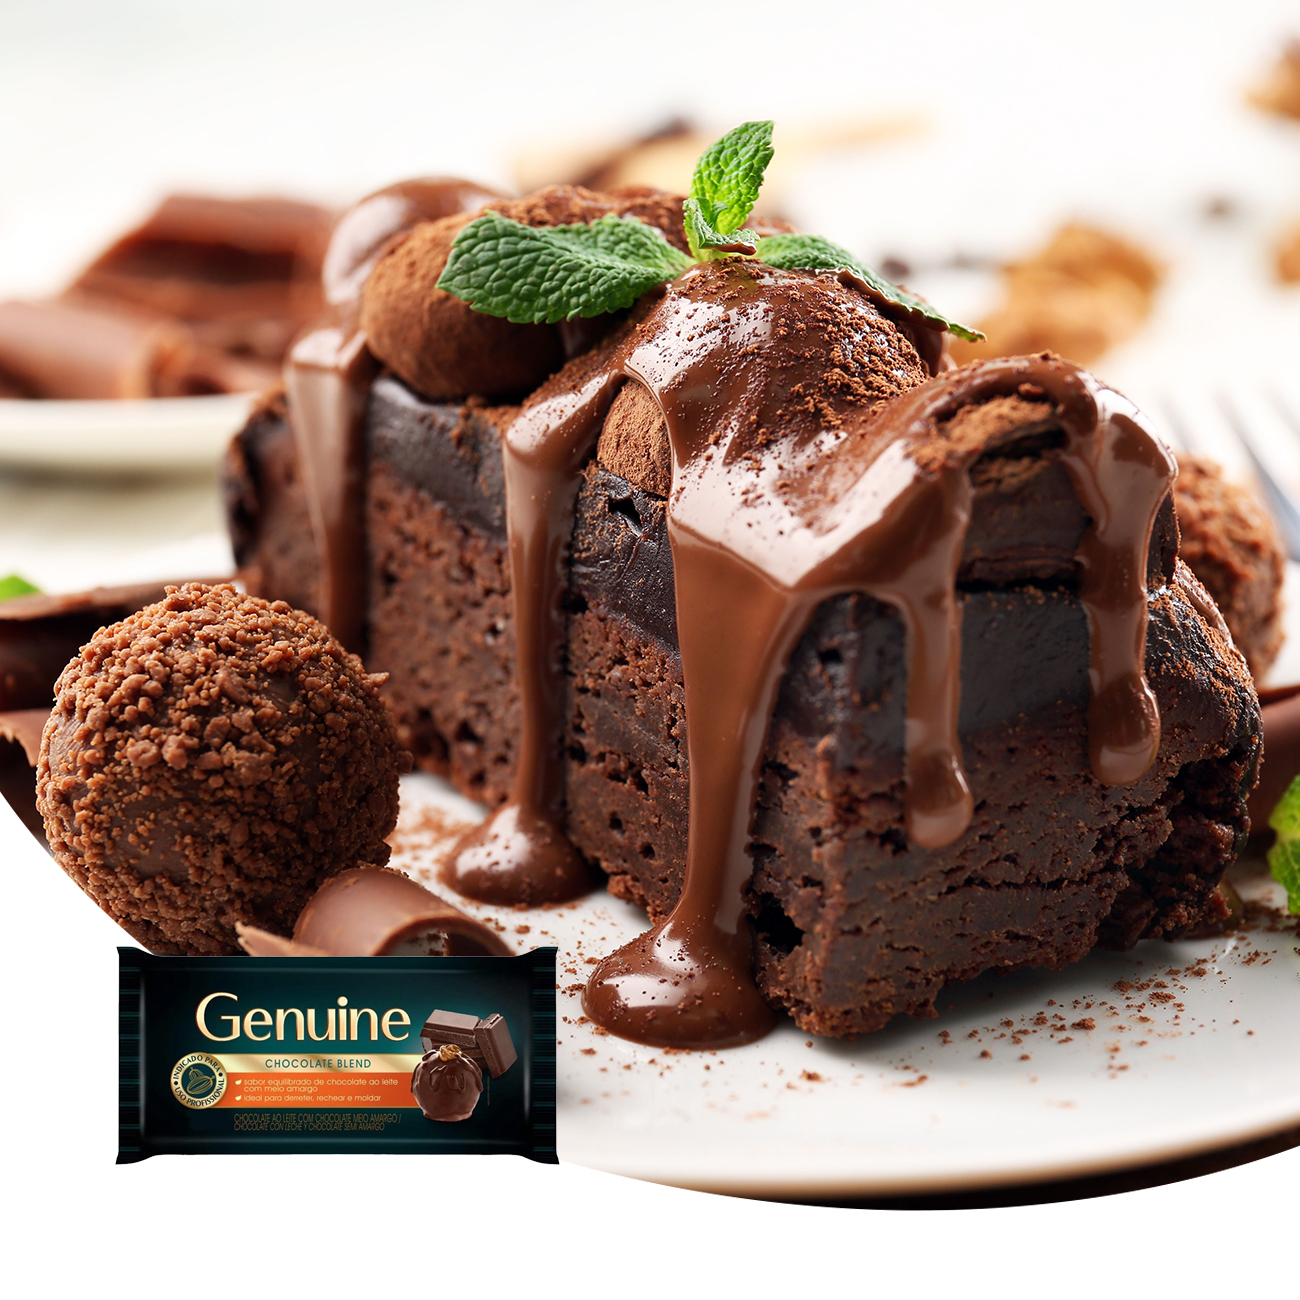 Cobertura de Chocolate em Barra Cargill Genuine Blend 1kg